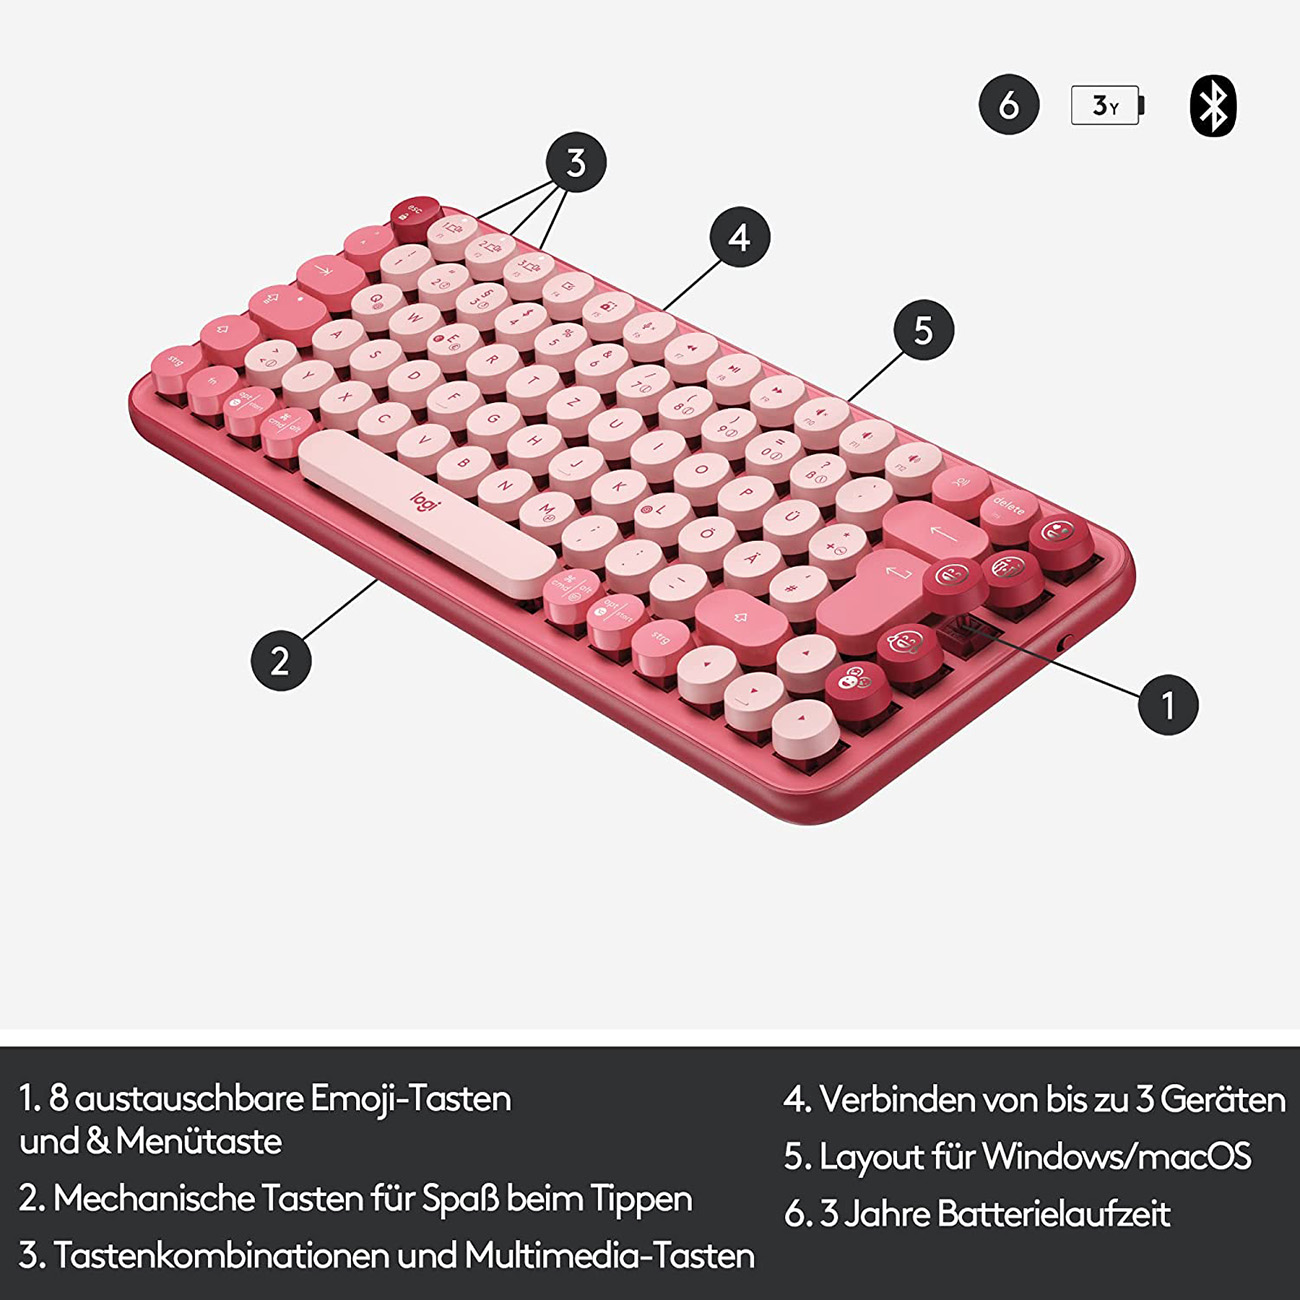 LOGITECH POP Wireless Keys, Tastatur